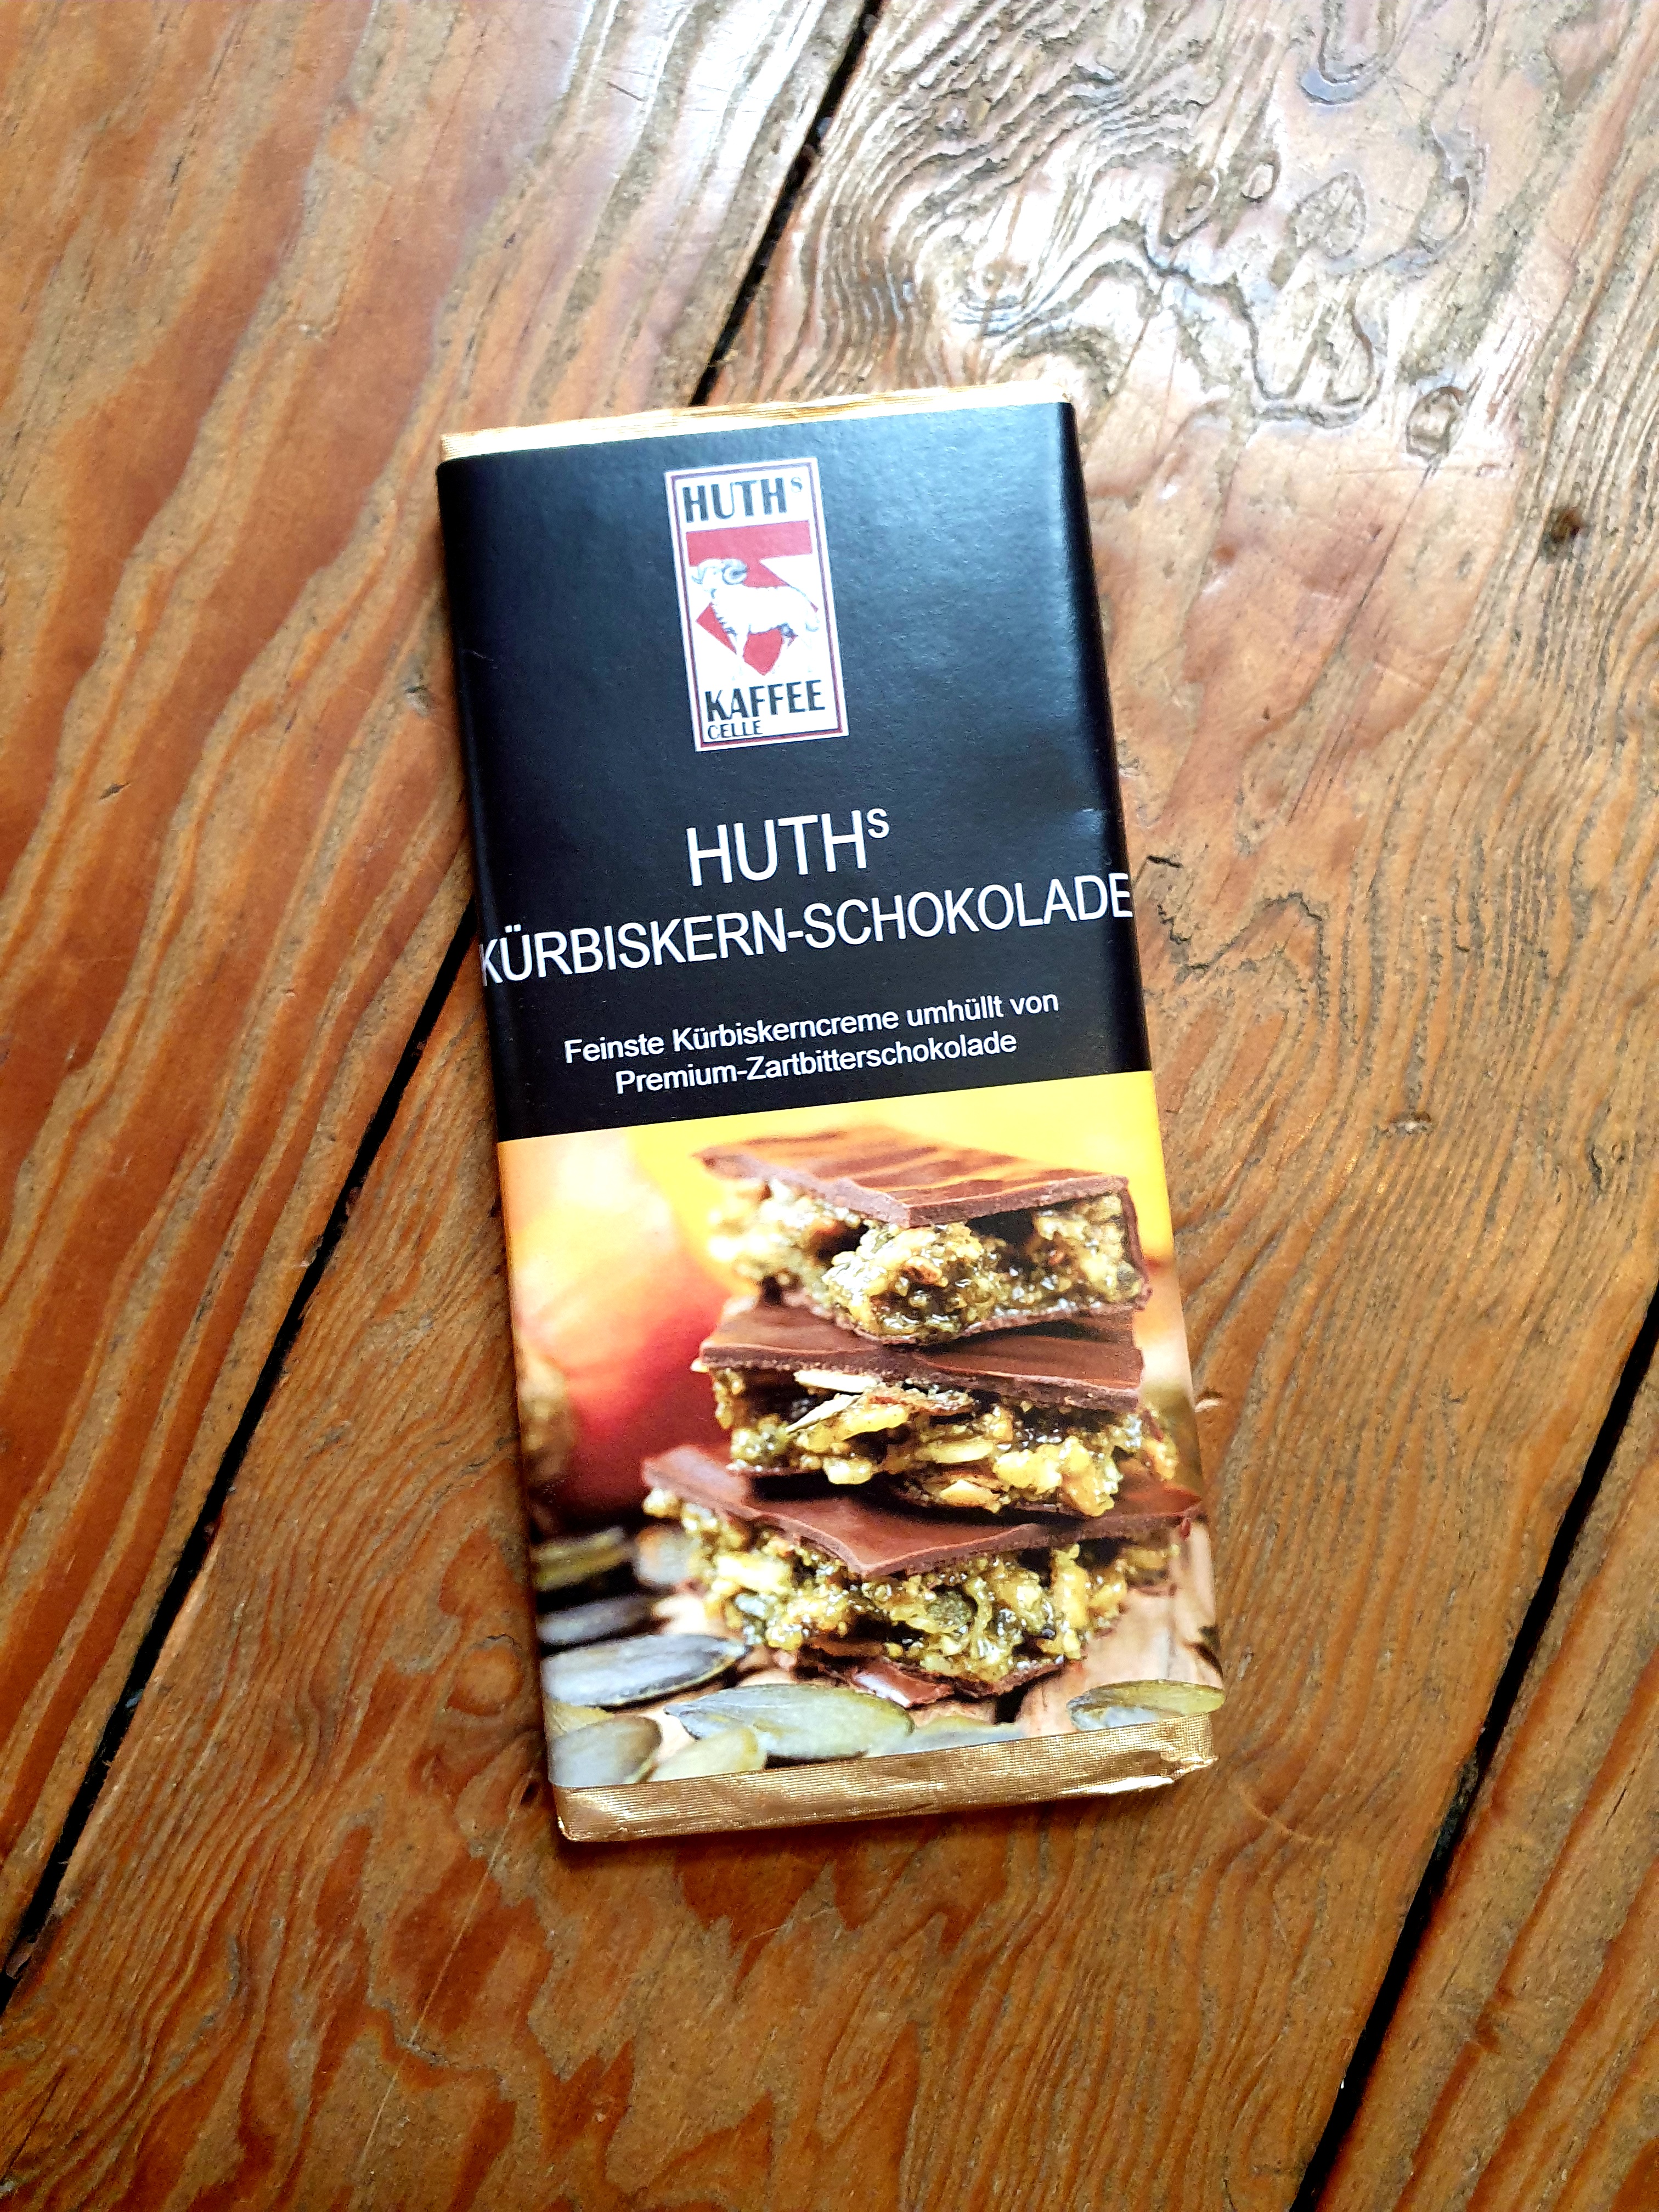 Huth's Kürbiskern-Schokolade  - AKTUELL AUSVERKAUFT, NACHSCHUB IST UNTERWEGS